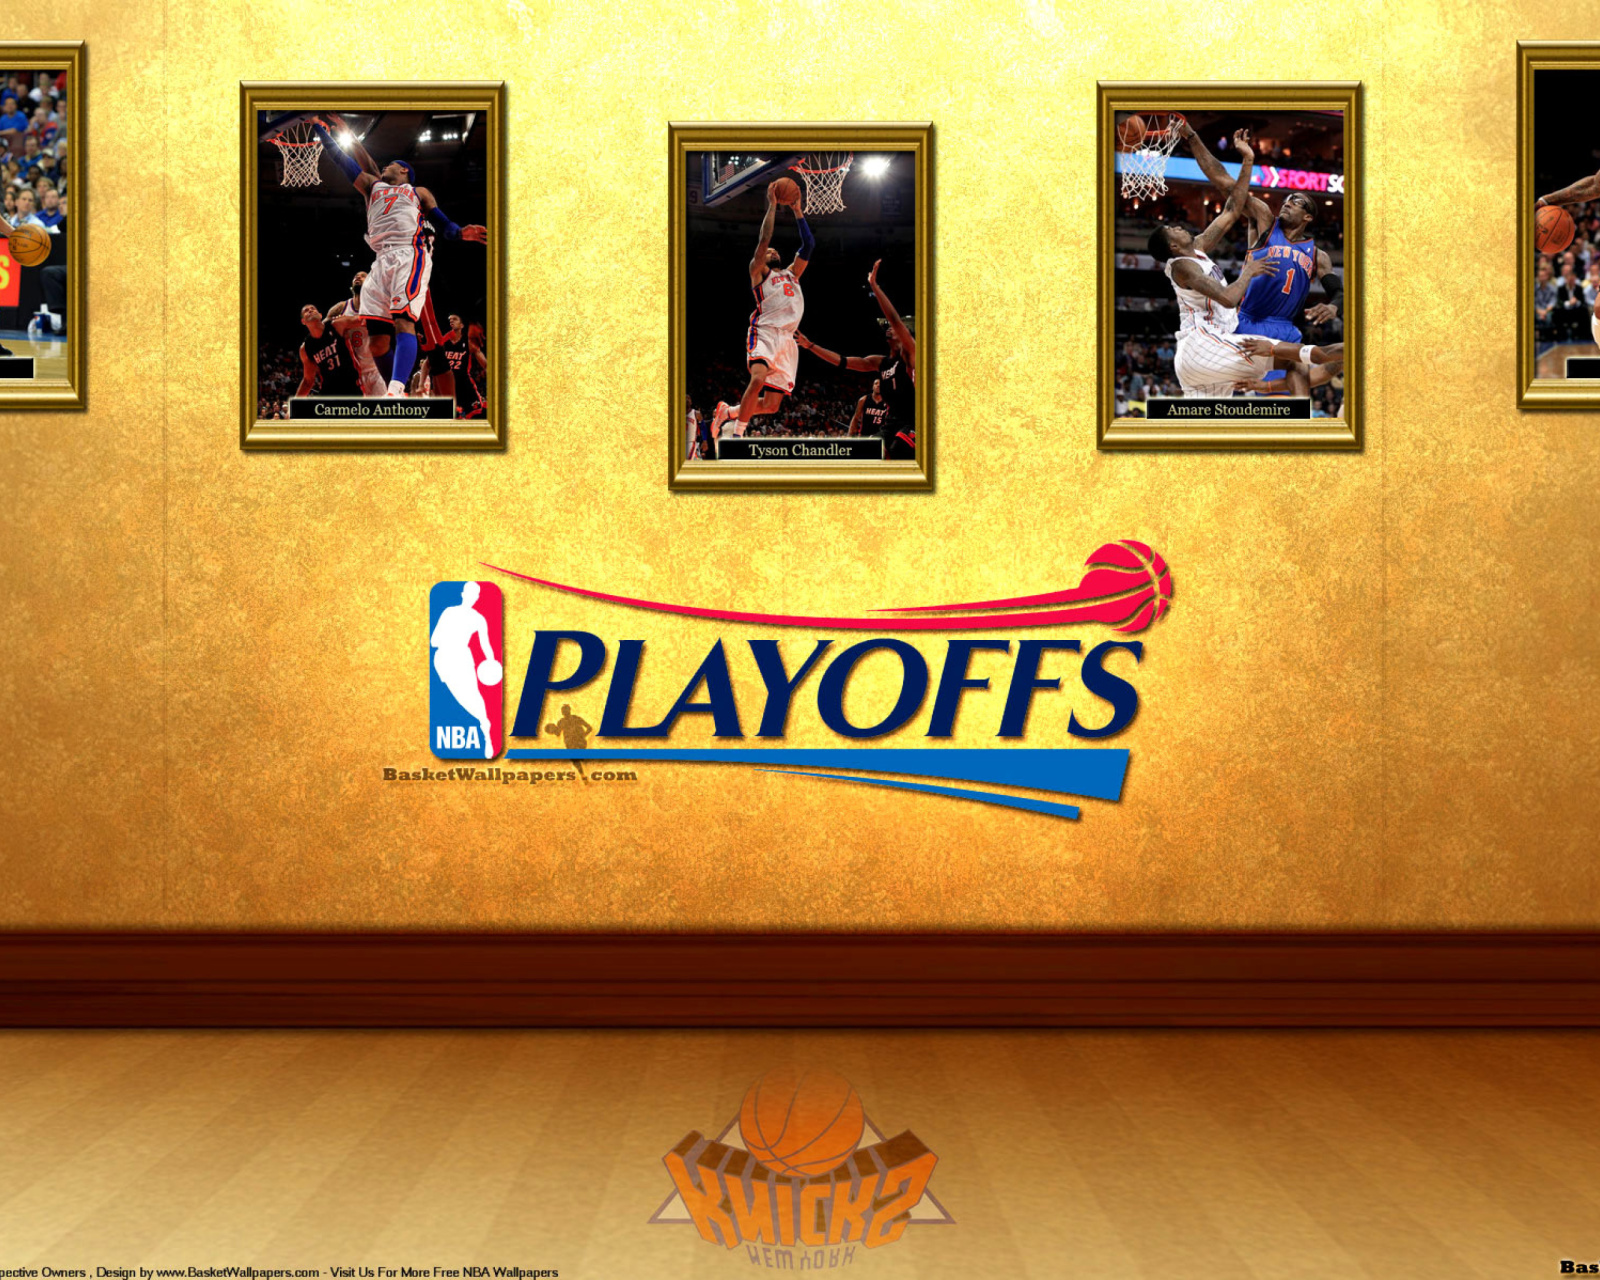 New York Knicks NBA Playoffs wallpaper 1600x1280